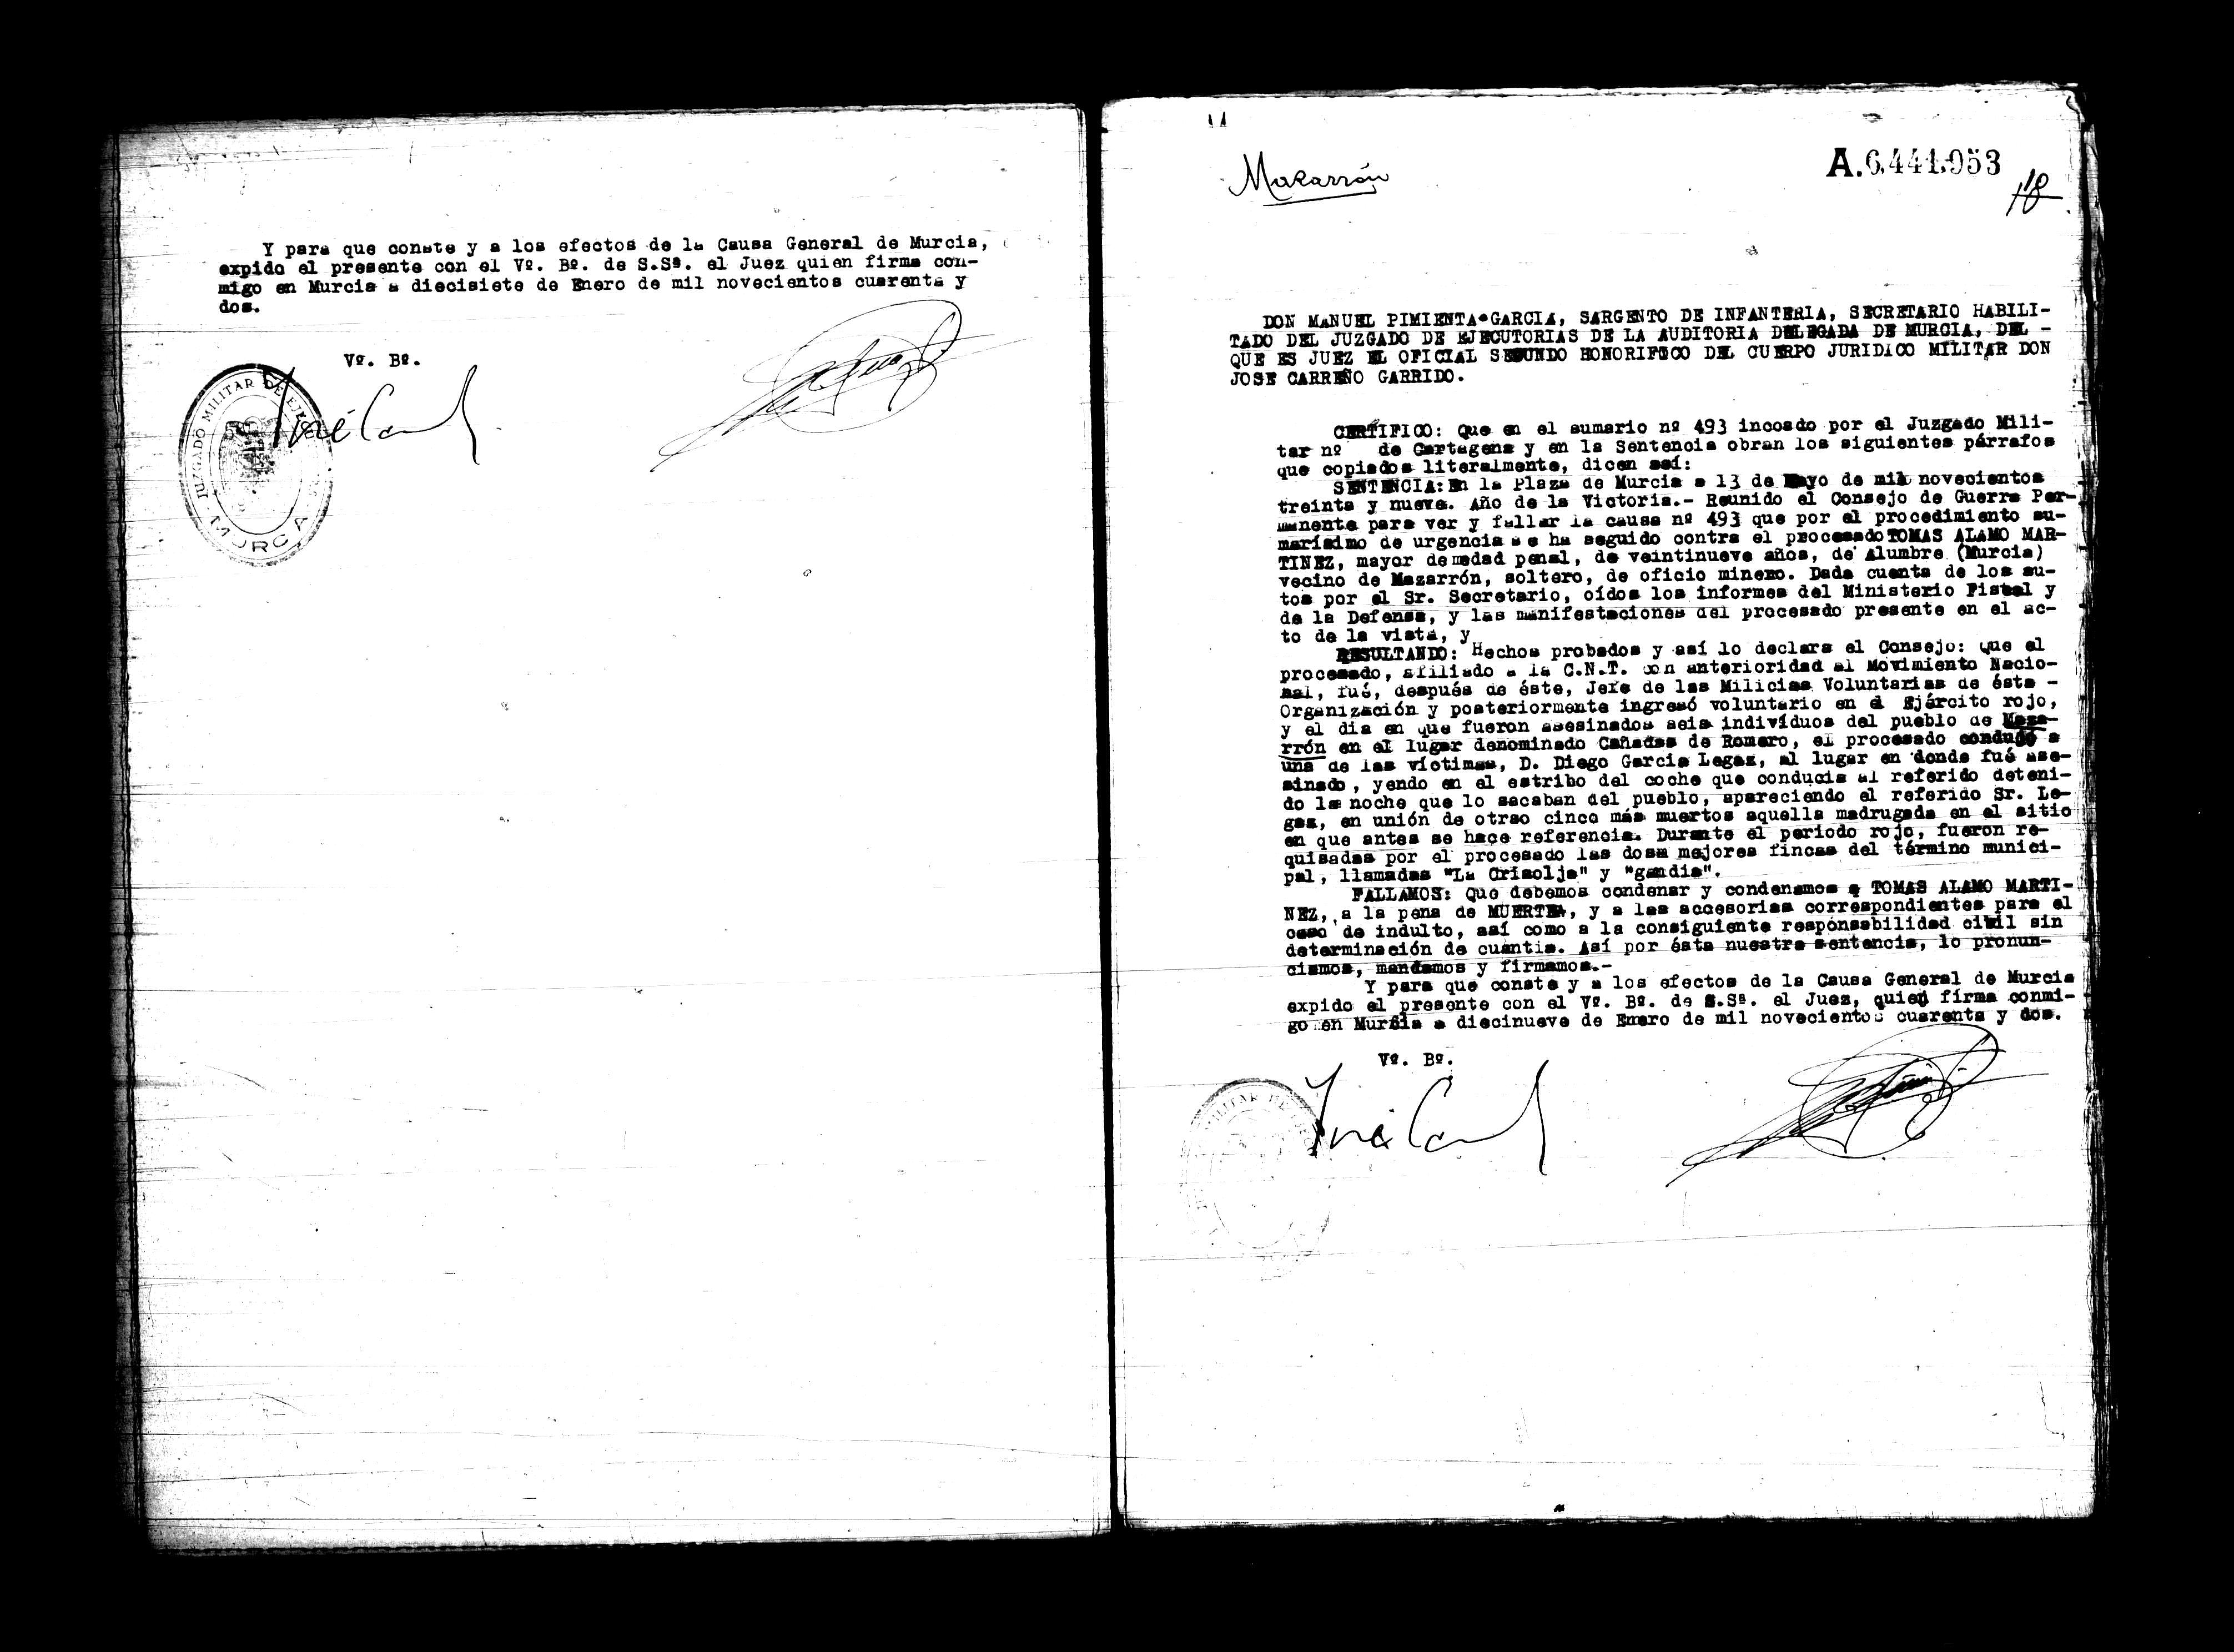 Certificado de la sentencia pronunciada contra Tomás Álamo Martínez, causa 493, el 13 de mayo de 1939 en Murcia.